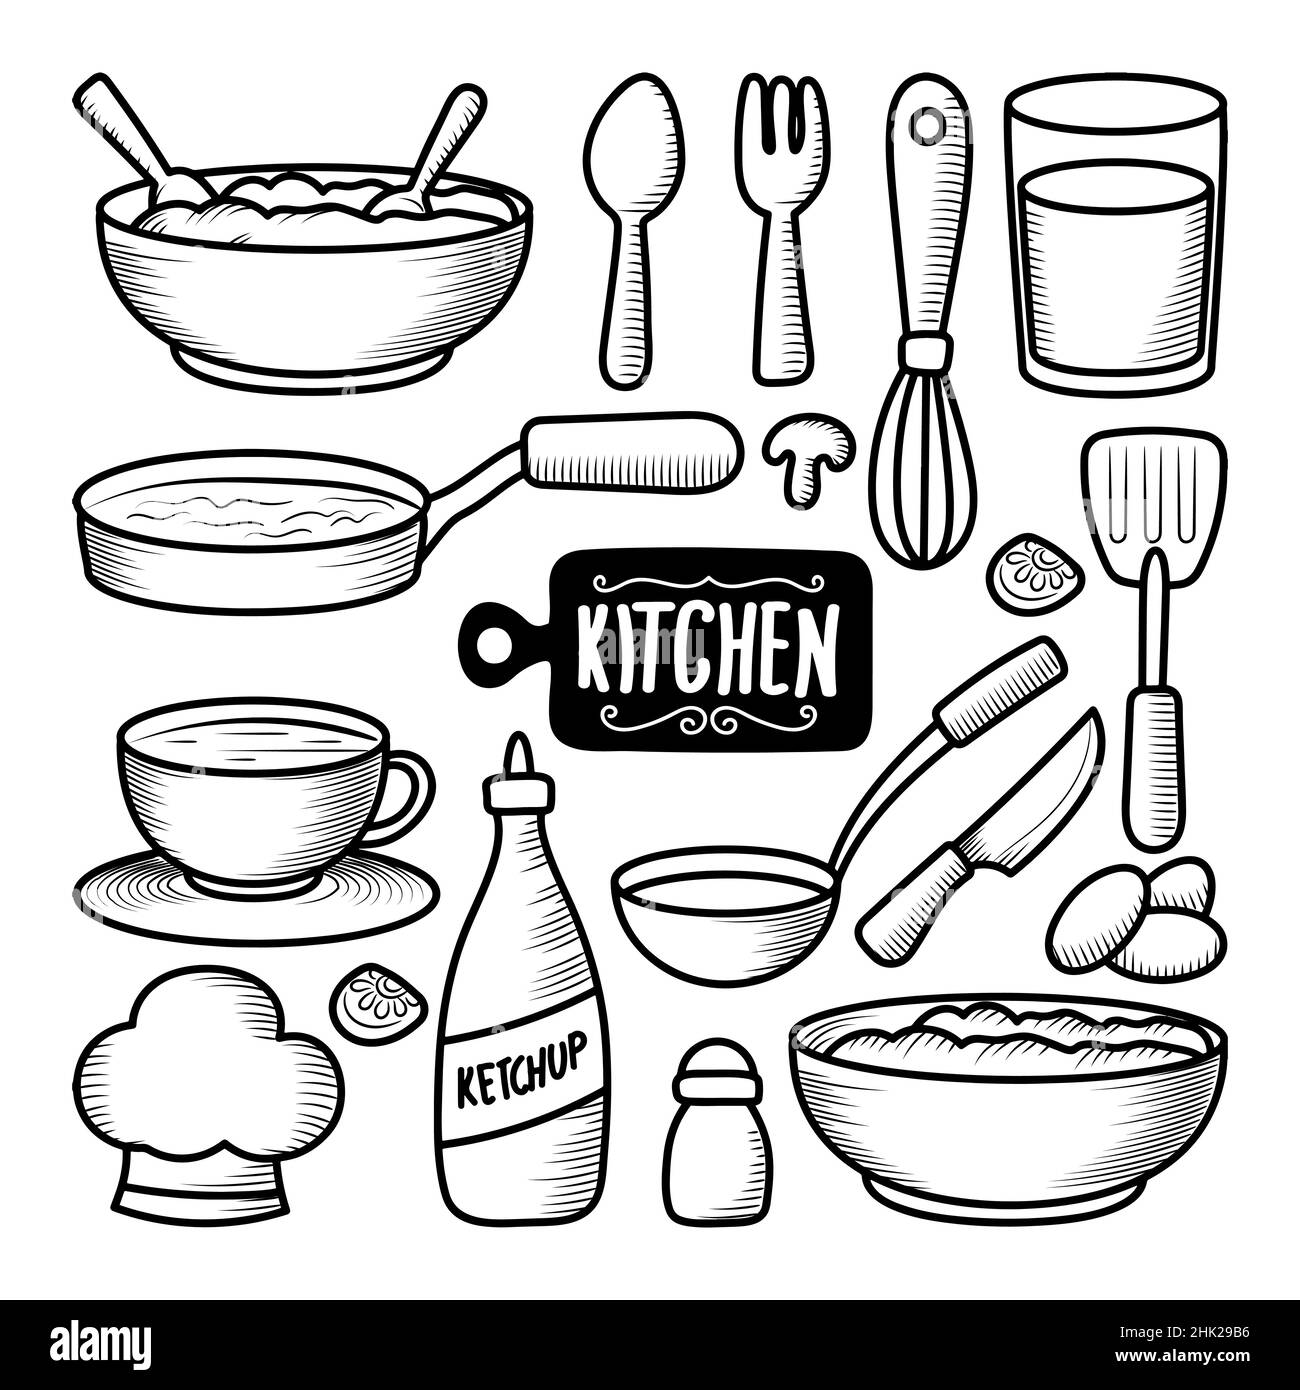 Sammlungen von Küchenutensilien handgezeichnete Doodle-Elemente Stock Vektor